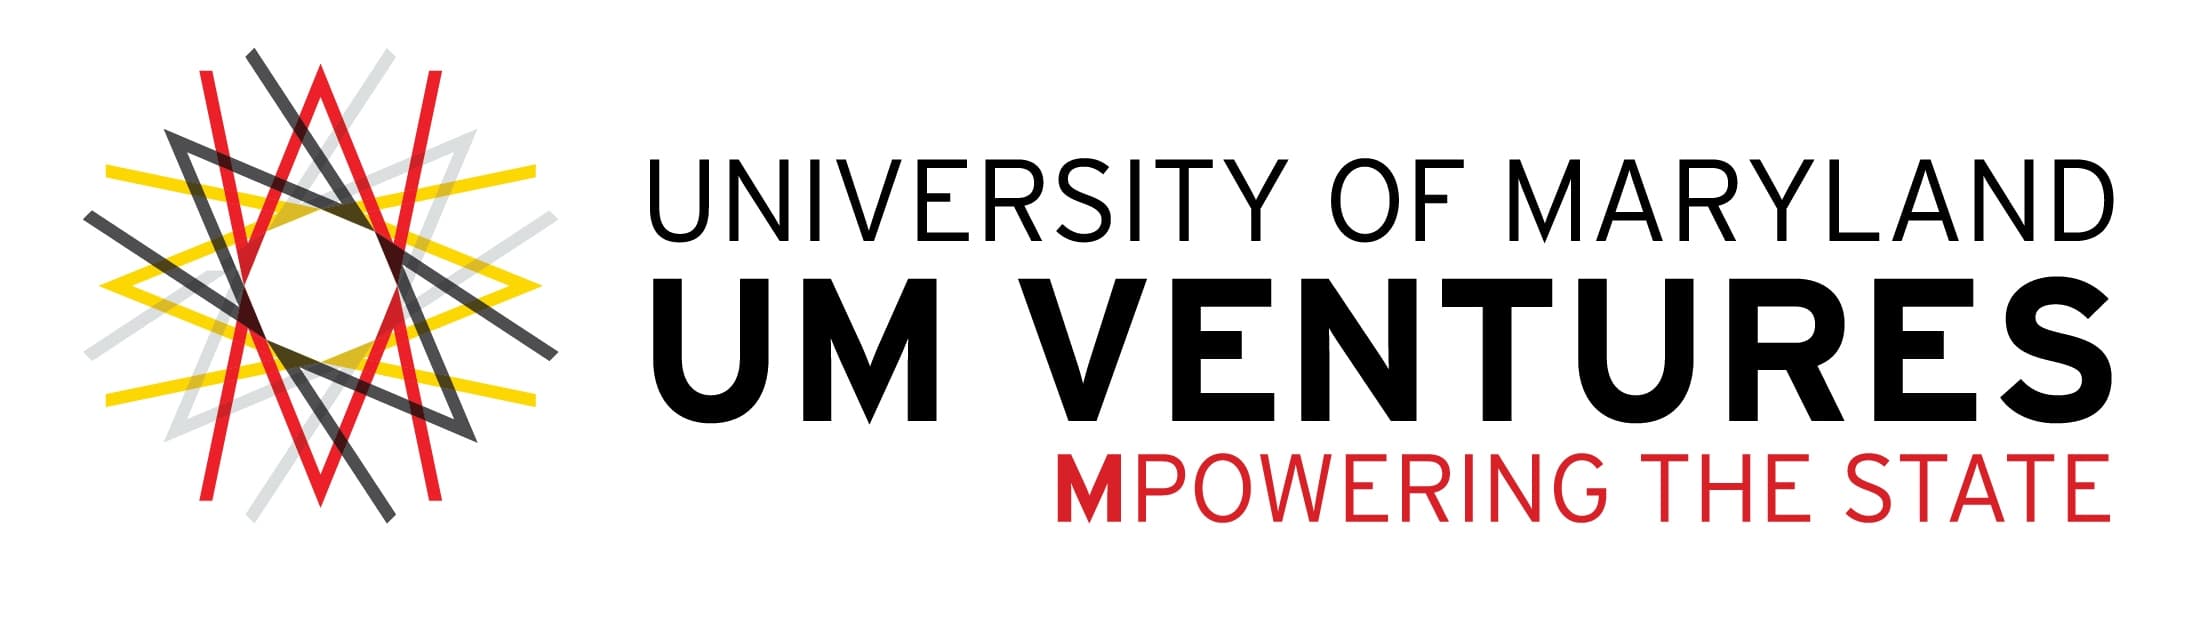 UM Ventures logo